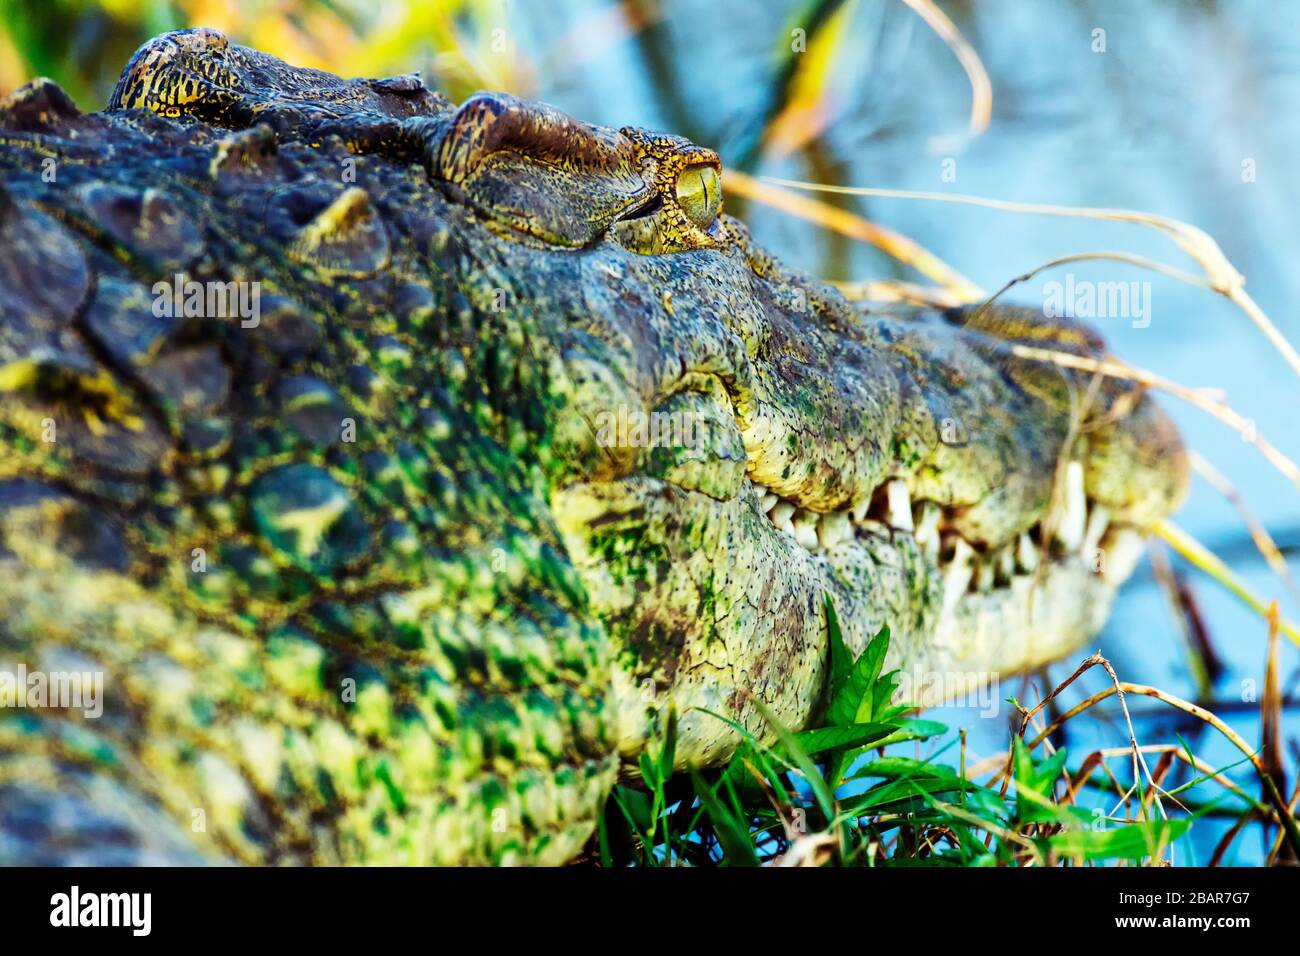 Gros plan d'un crocodile du Nil recouvert d'algues vertes baignant au soleil dans le parc national Kruger, Afrique du Sud Banque D'Images